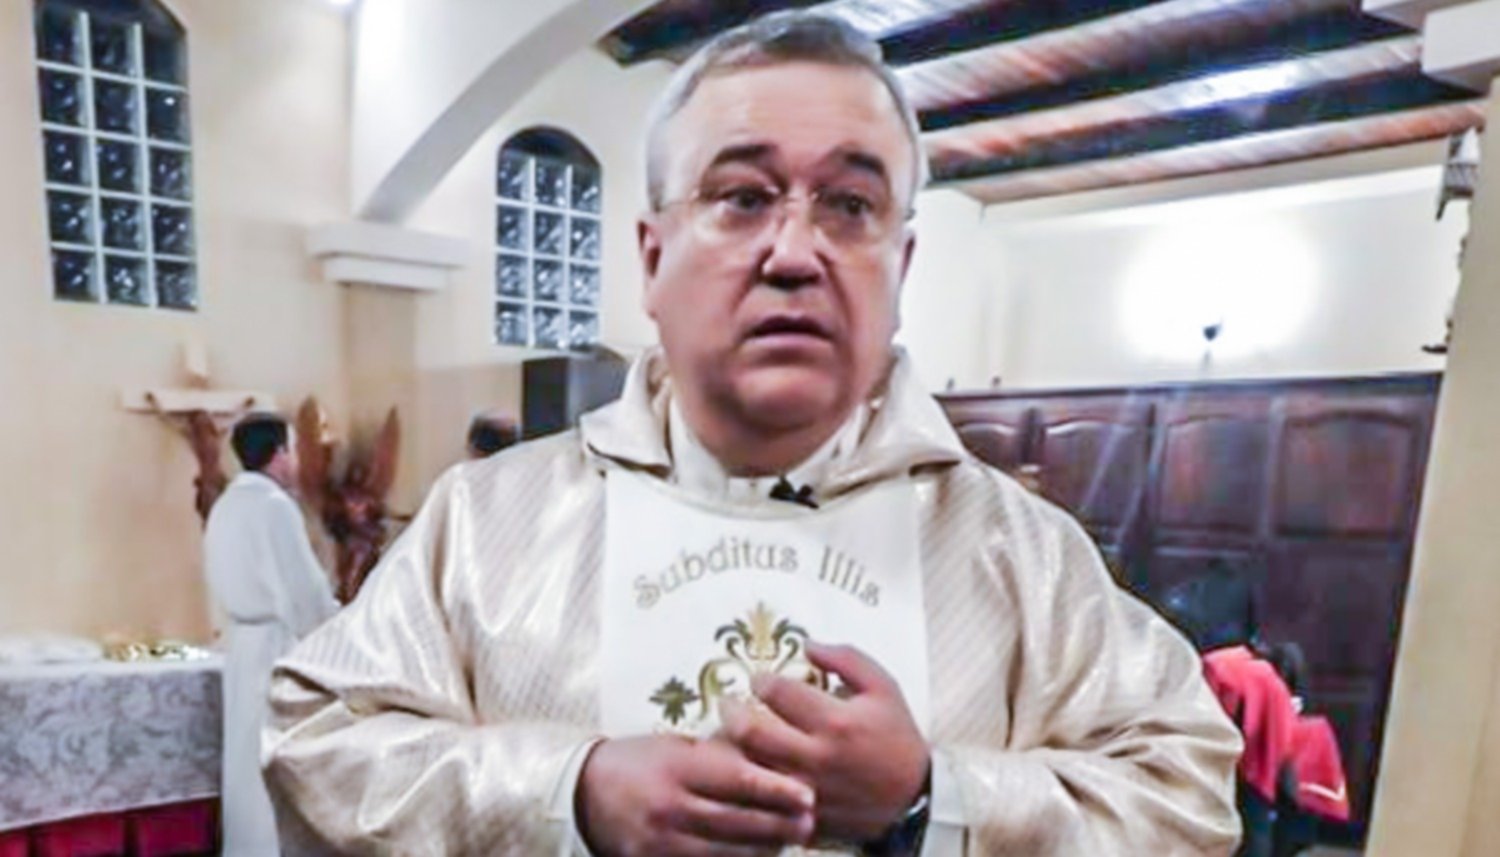 Un tribunal eclesiástico le quitó el estado clerical al cura Aguilera